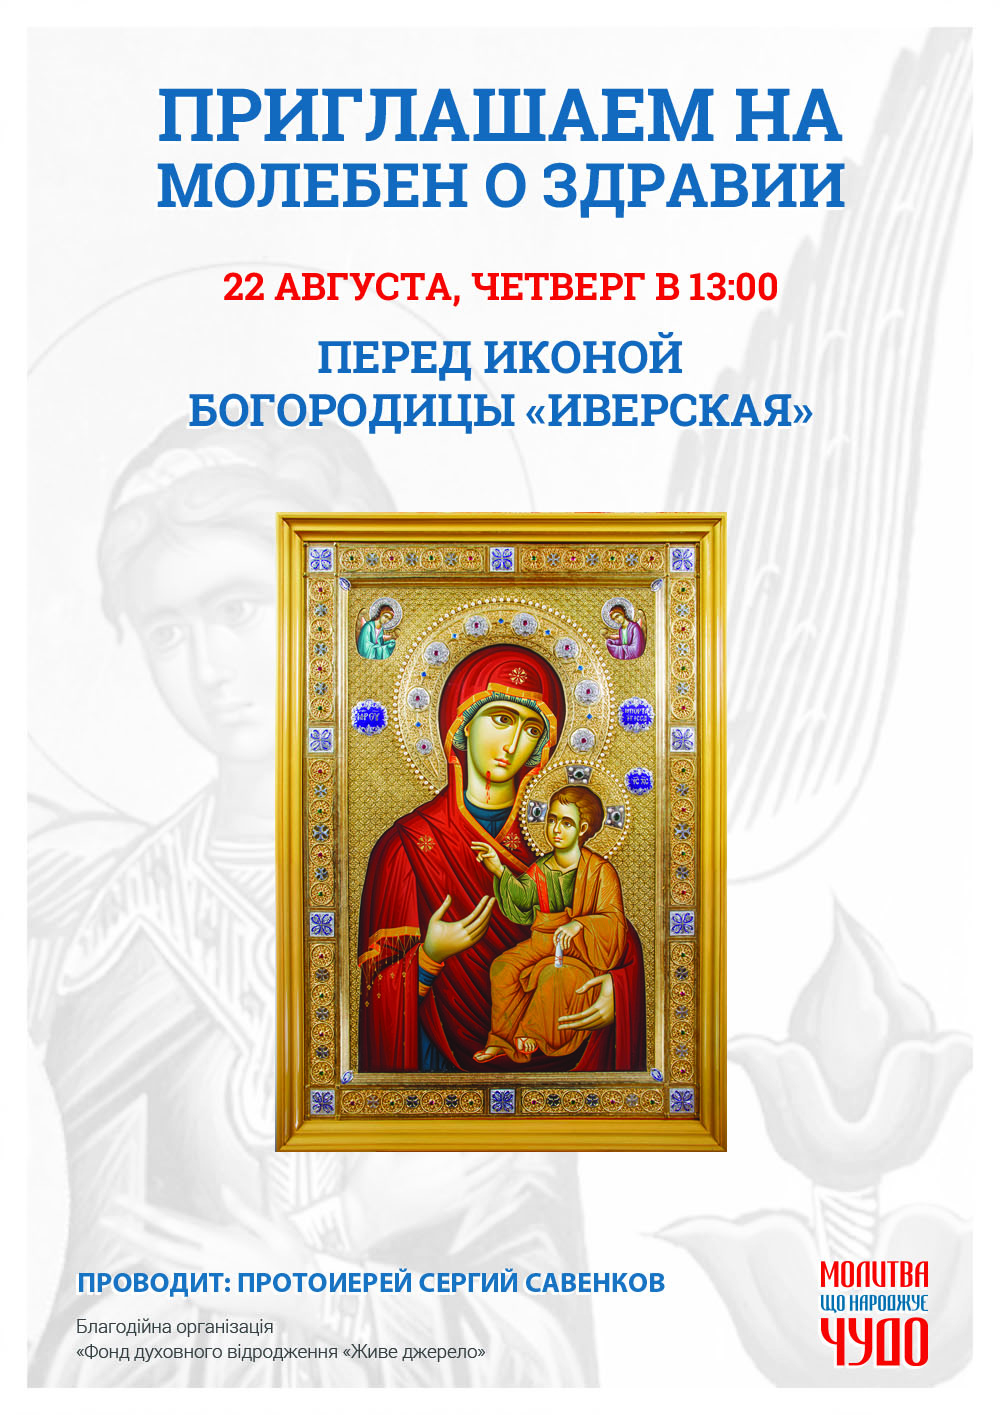 Молебен о здравии. Чудотворная афонская икона Богородицы в Киеве